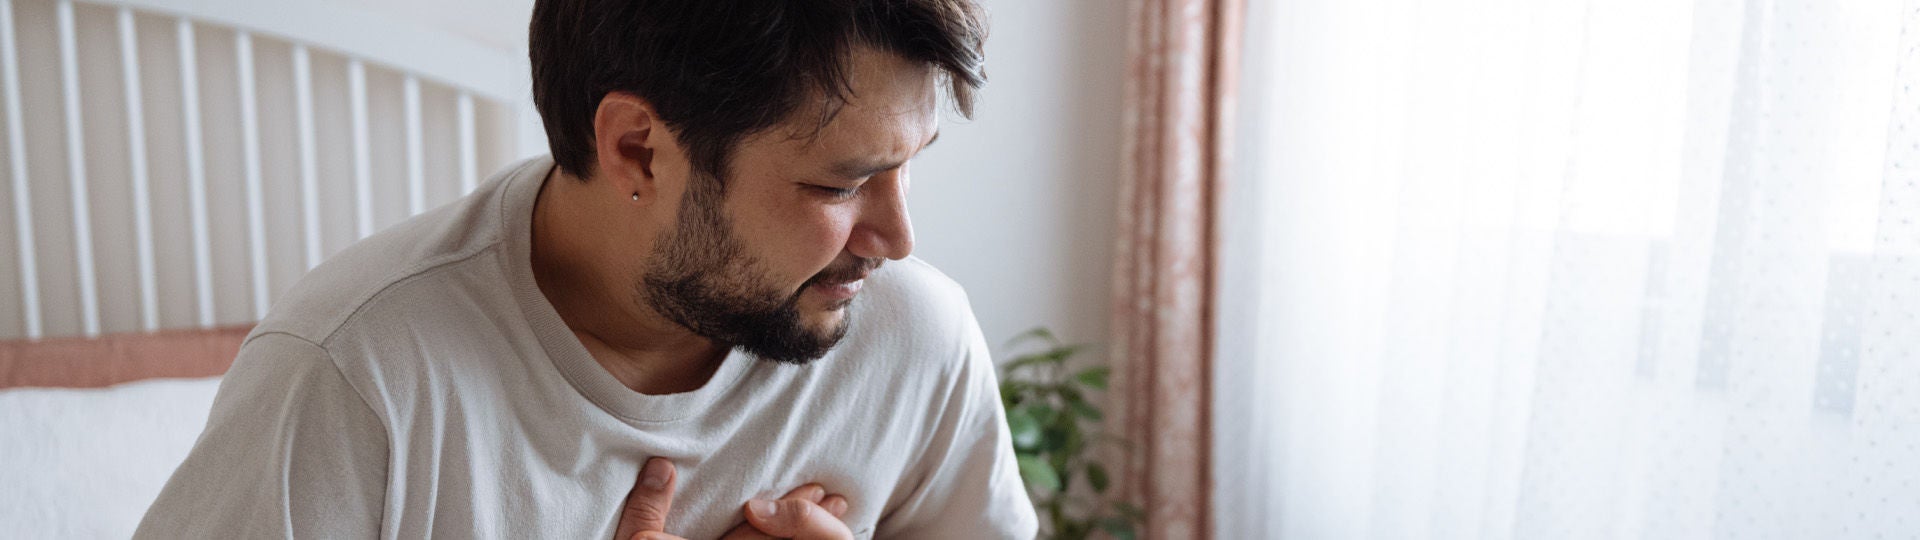 Junger Mann sitzt auf dem Bett und hält sich die schmerzende Brust. Bildquelle: iStock/ozgurcankaya